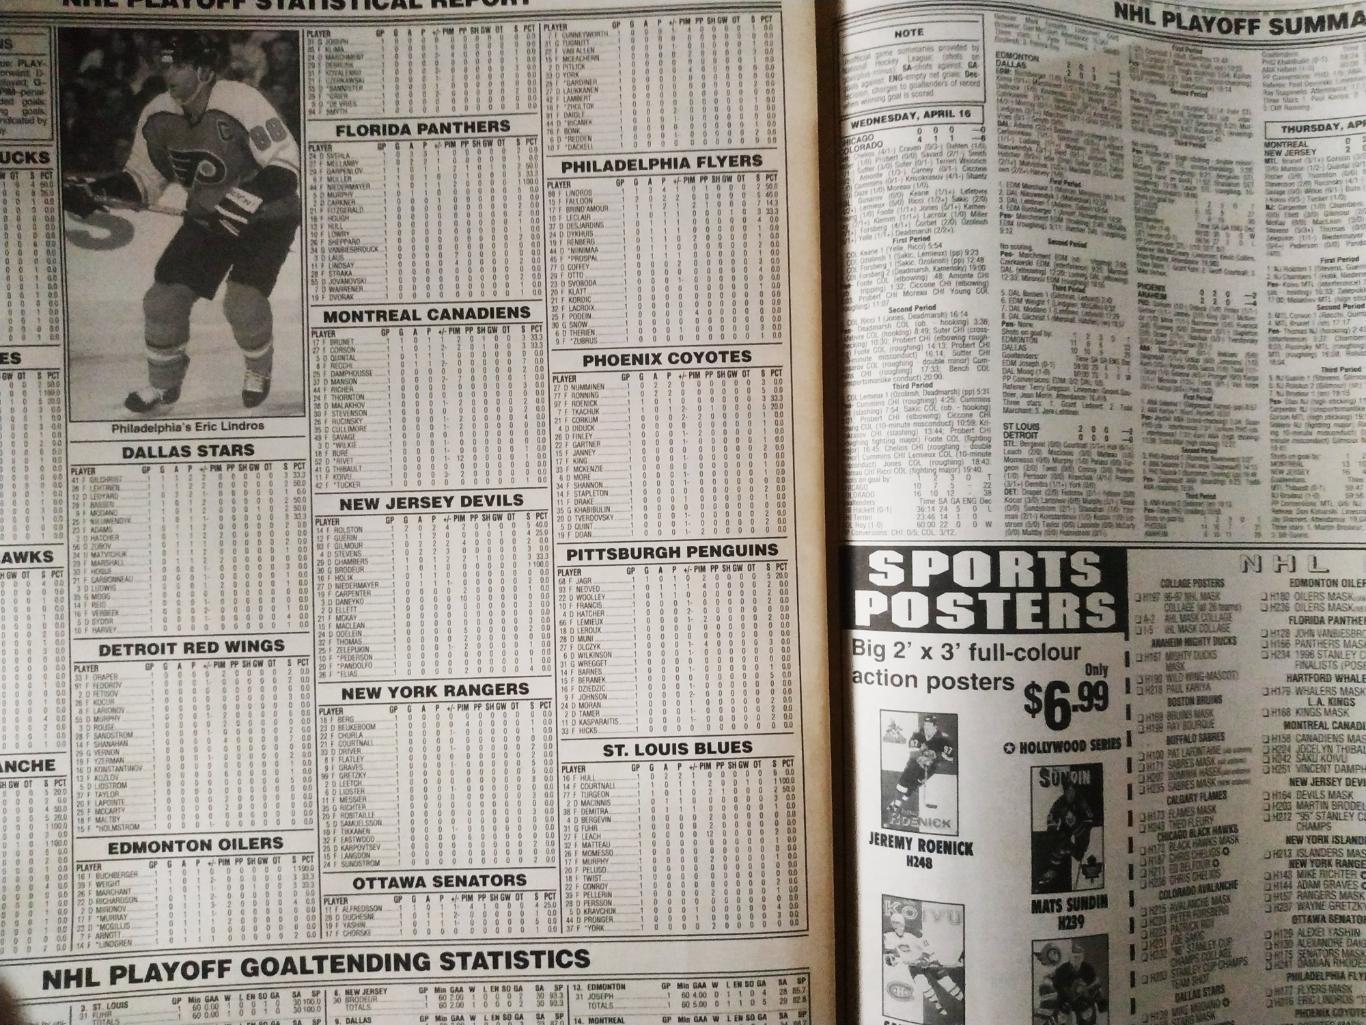 ХОККЕЙ ЖУРНАЛ ЕЖЕНЕДЕЛЬНИК НХЛ НОВОСТИ ХОККЕЯ NHL MAY.2 1997 THE HOCKEY NEWS 6